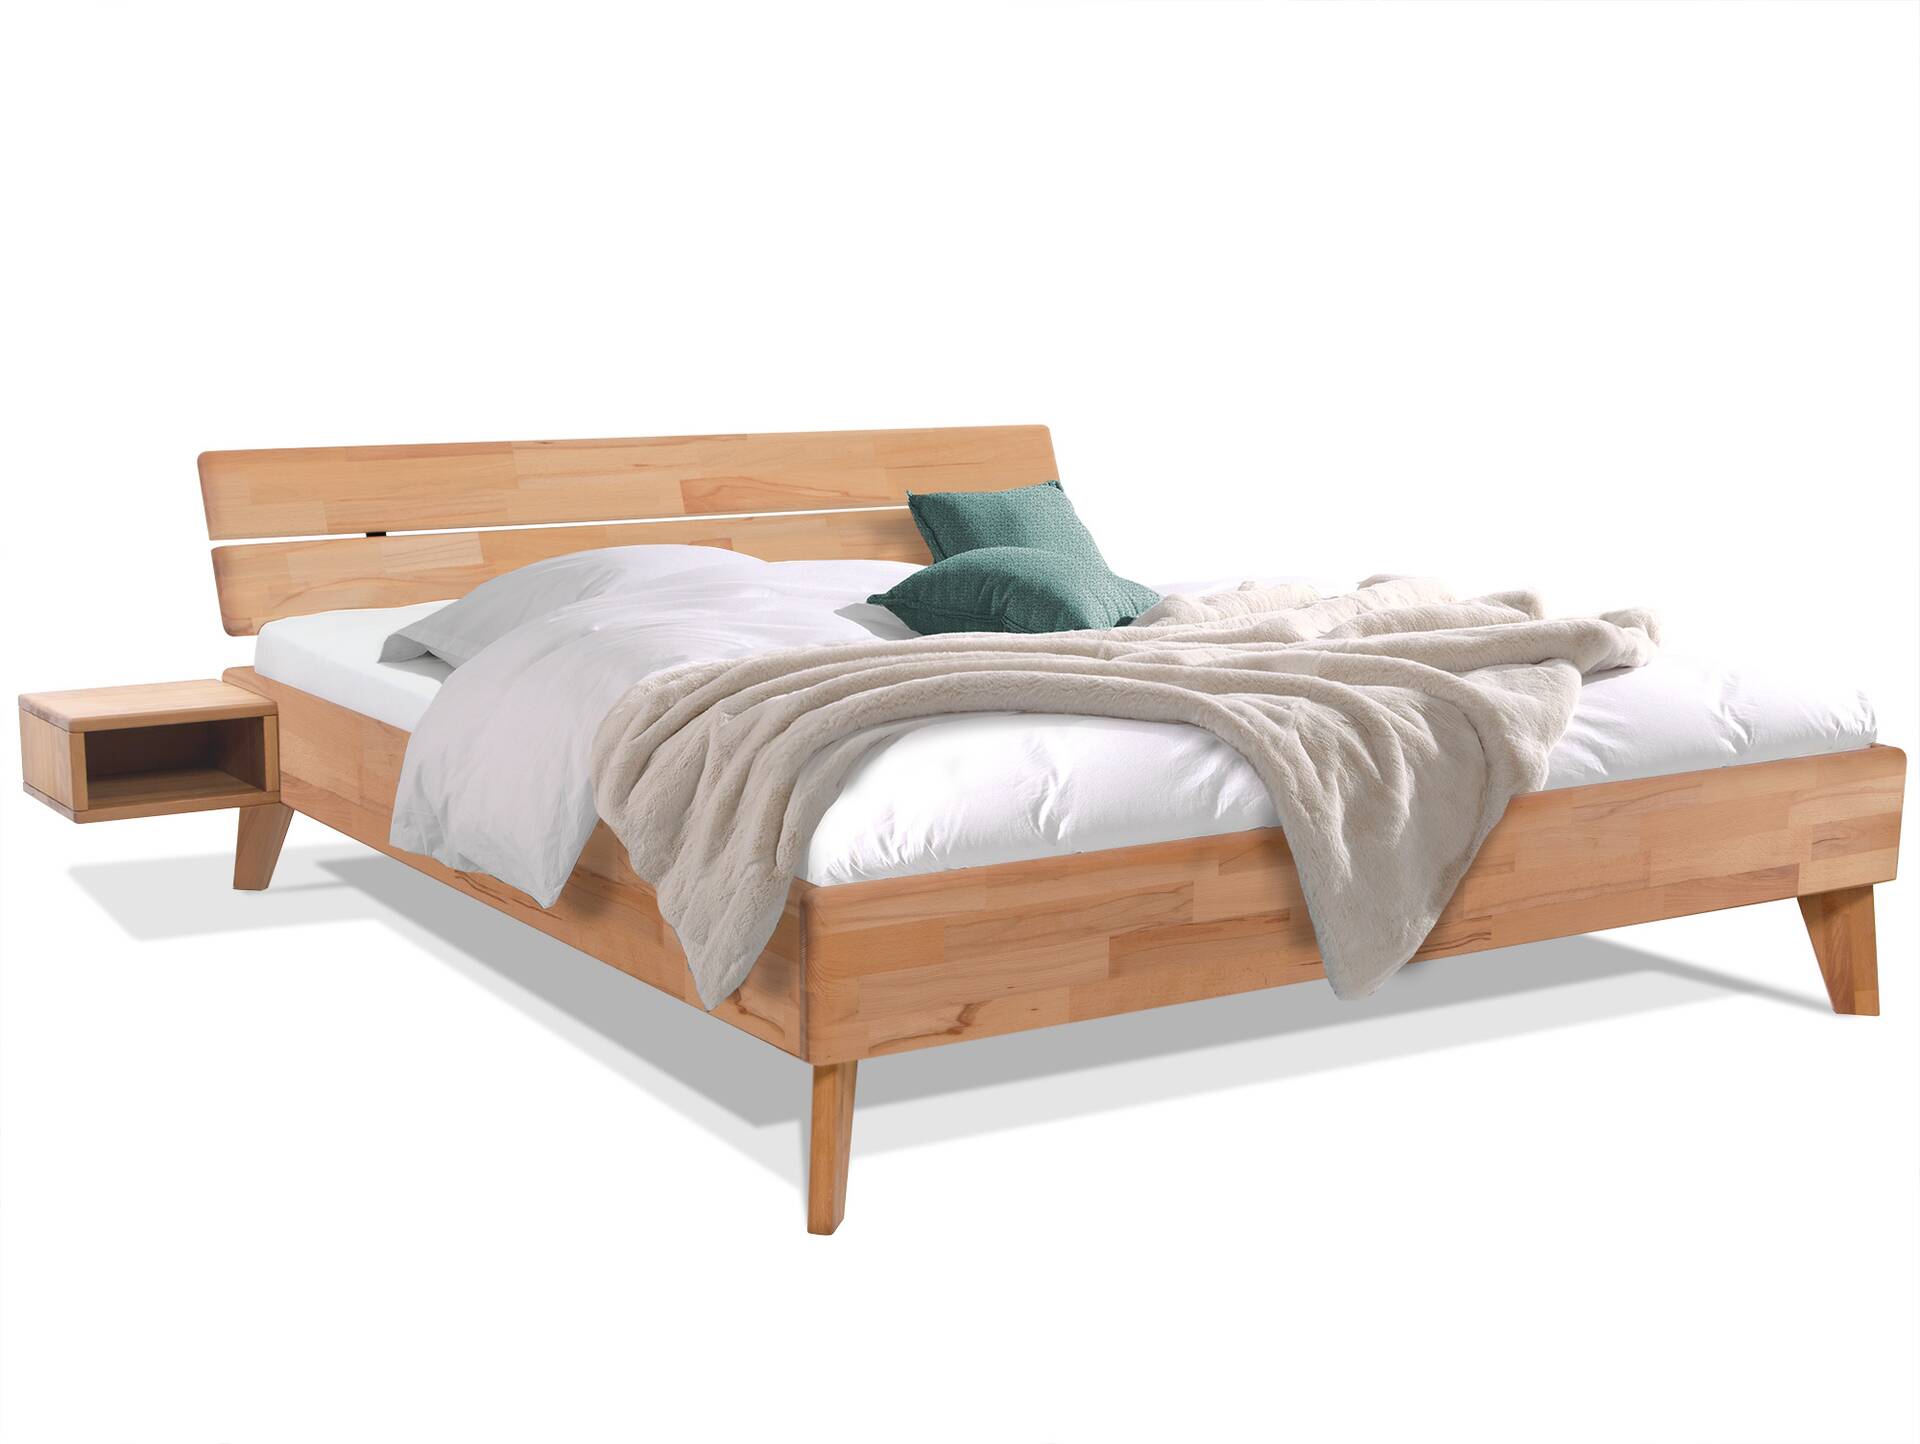 CALIDO 4-Fuß-Bett, Material Massivholz, mit/ohne Kopfteil 180 x 220 cm | Buche geölt | Standardhöhe | mit Kopfteil